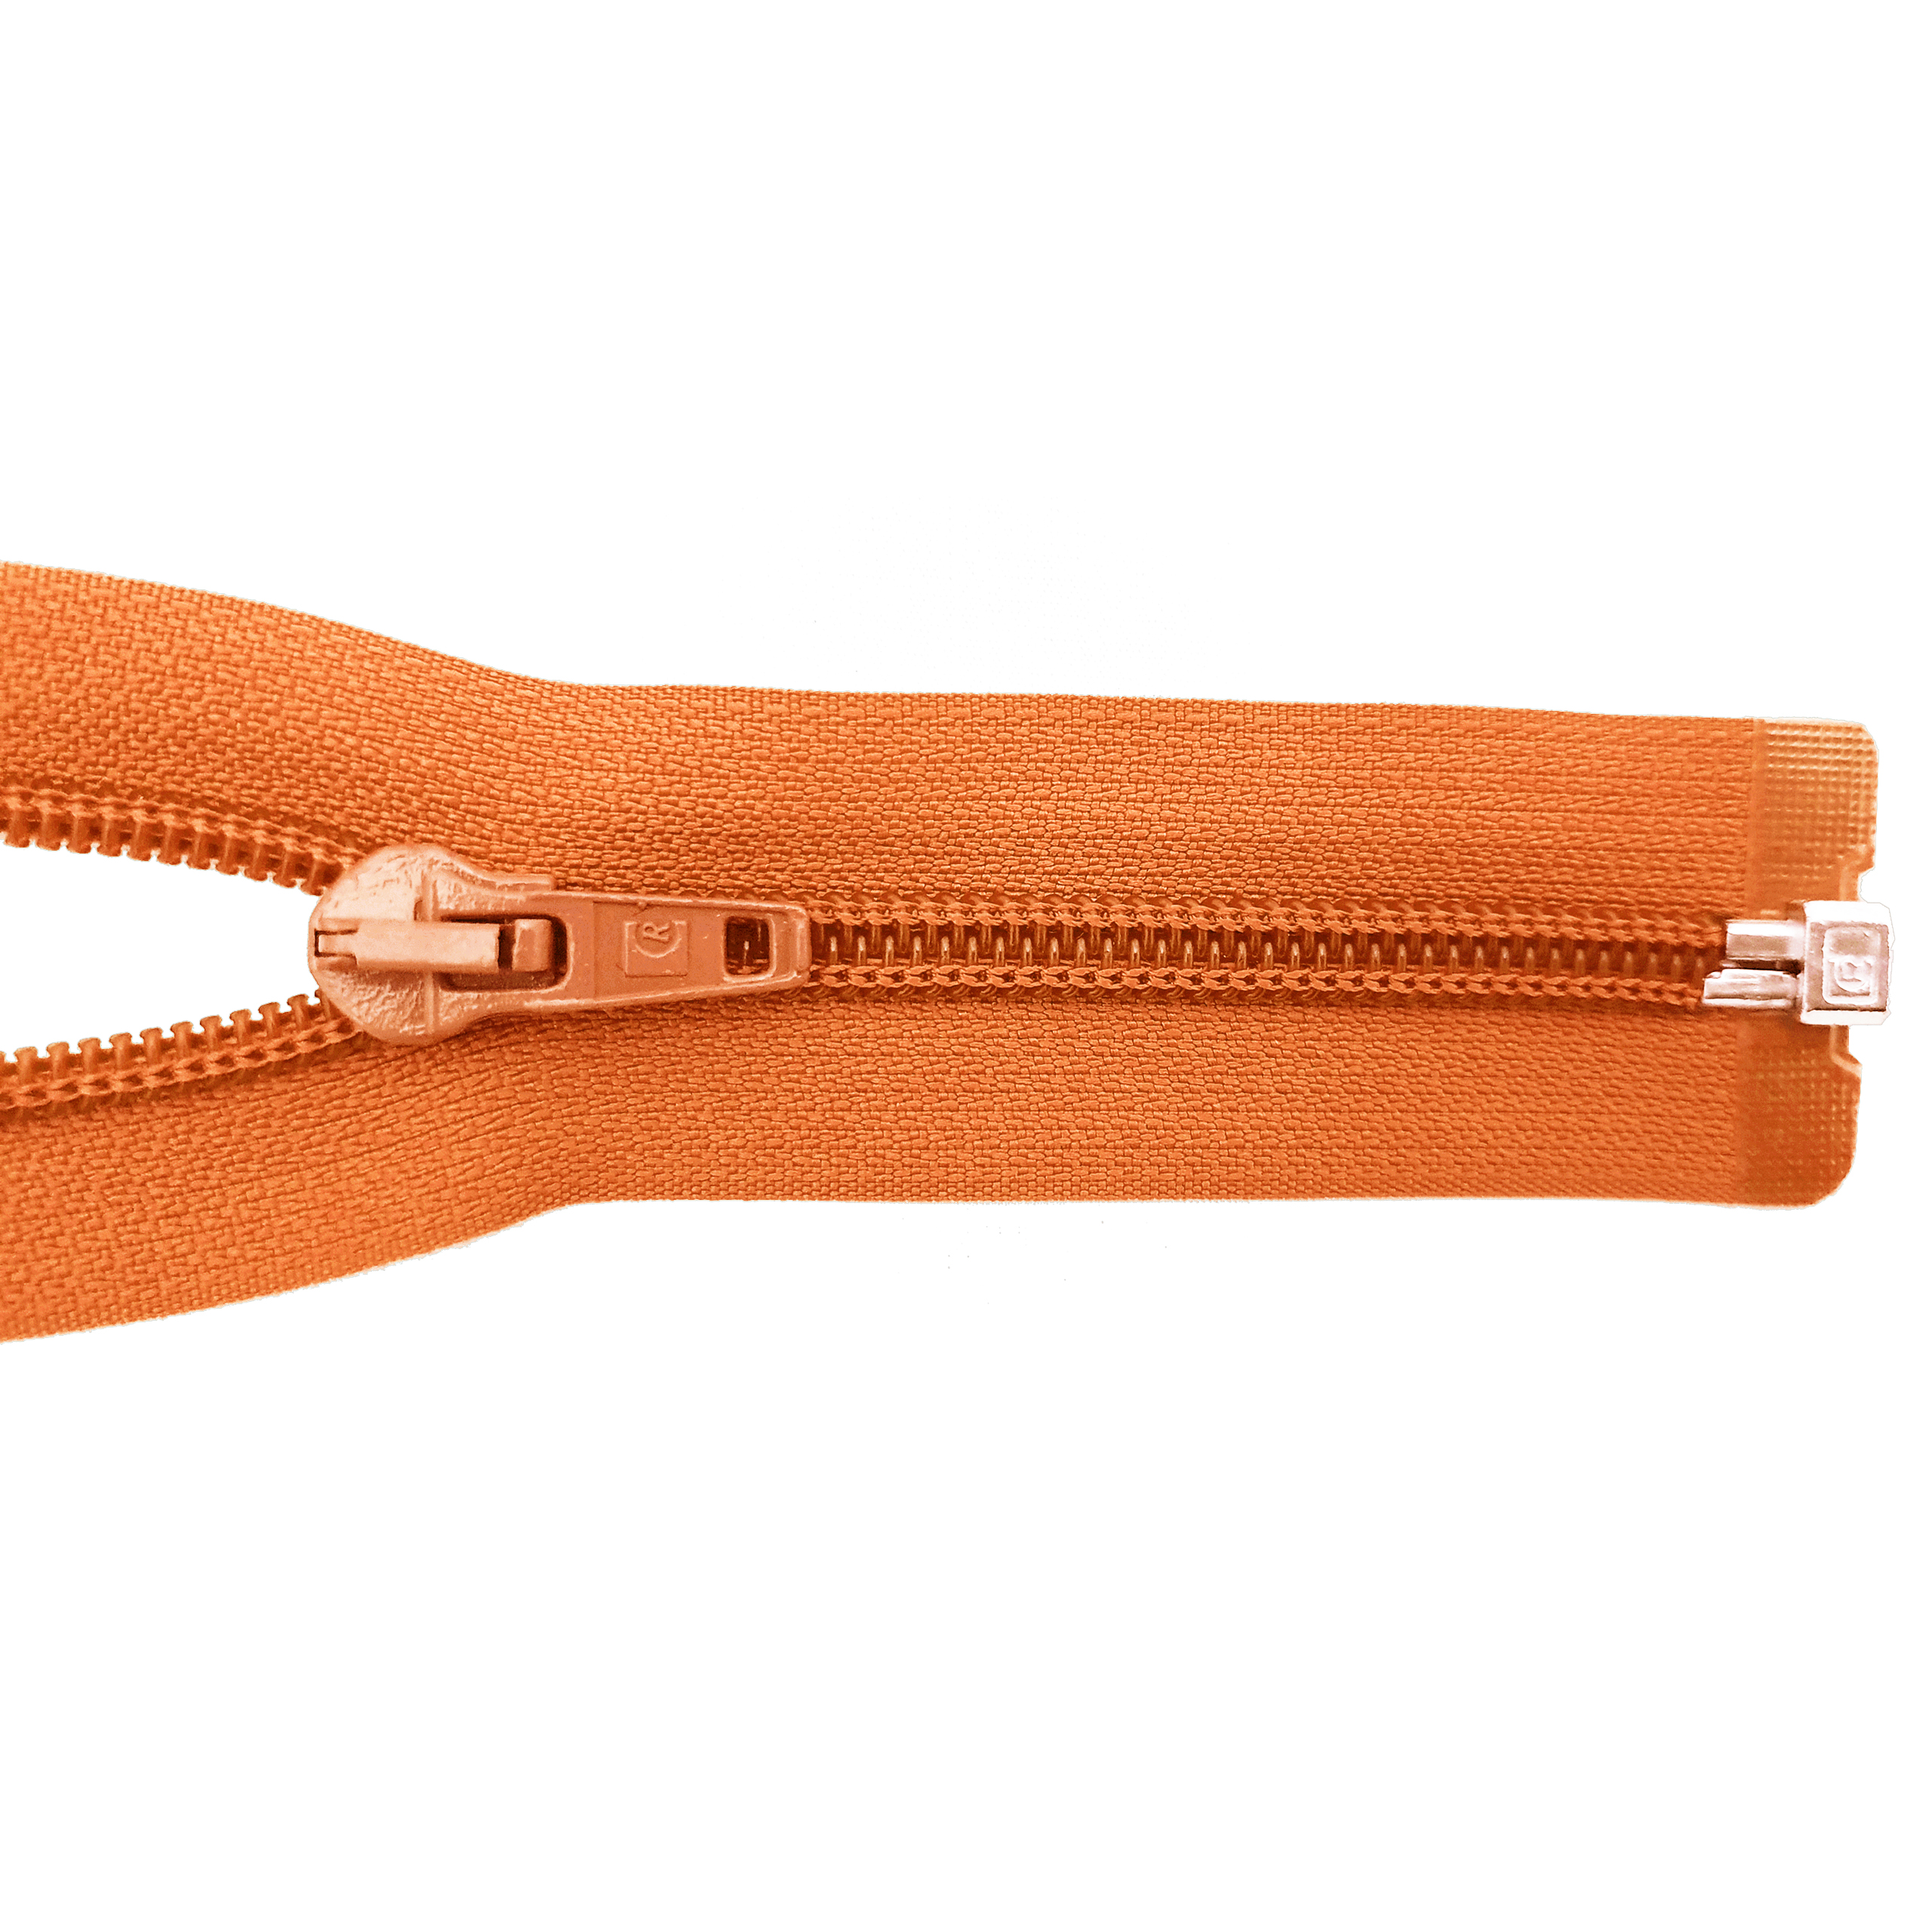 Reißverschluss 100cm, teilbar, Spirale breit, bräunlich-orange, hochwertiger Marken-Reißverschluss von Rubi/Barcelona